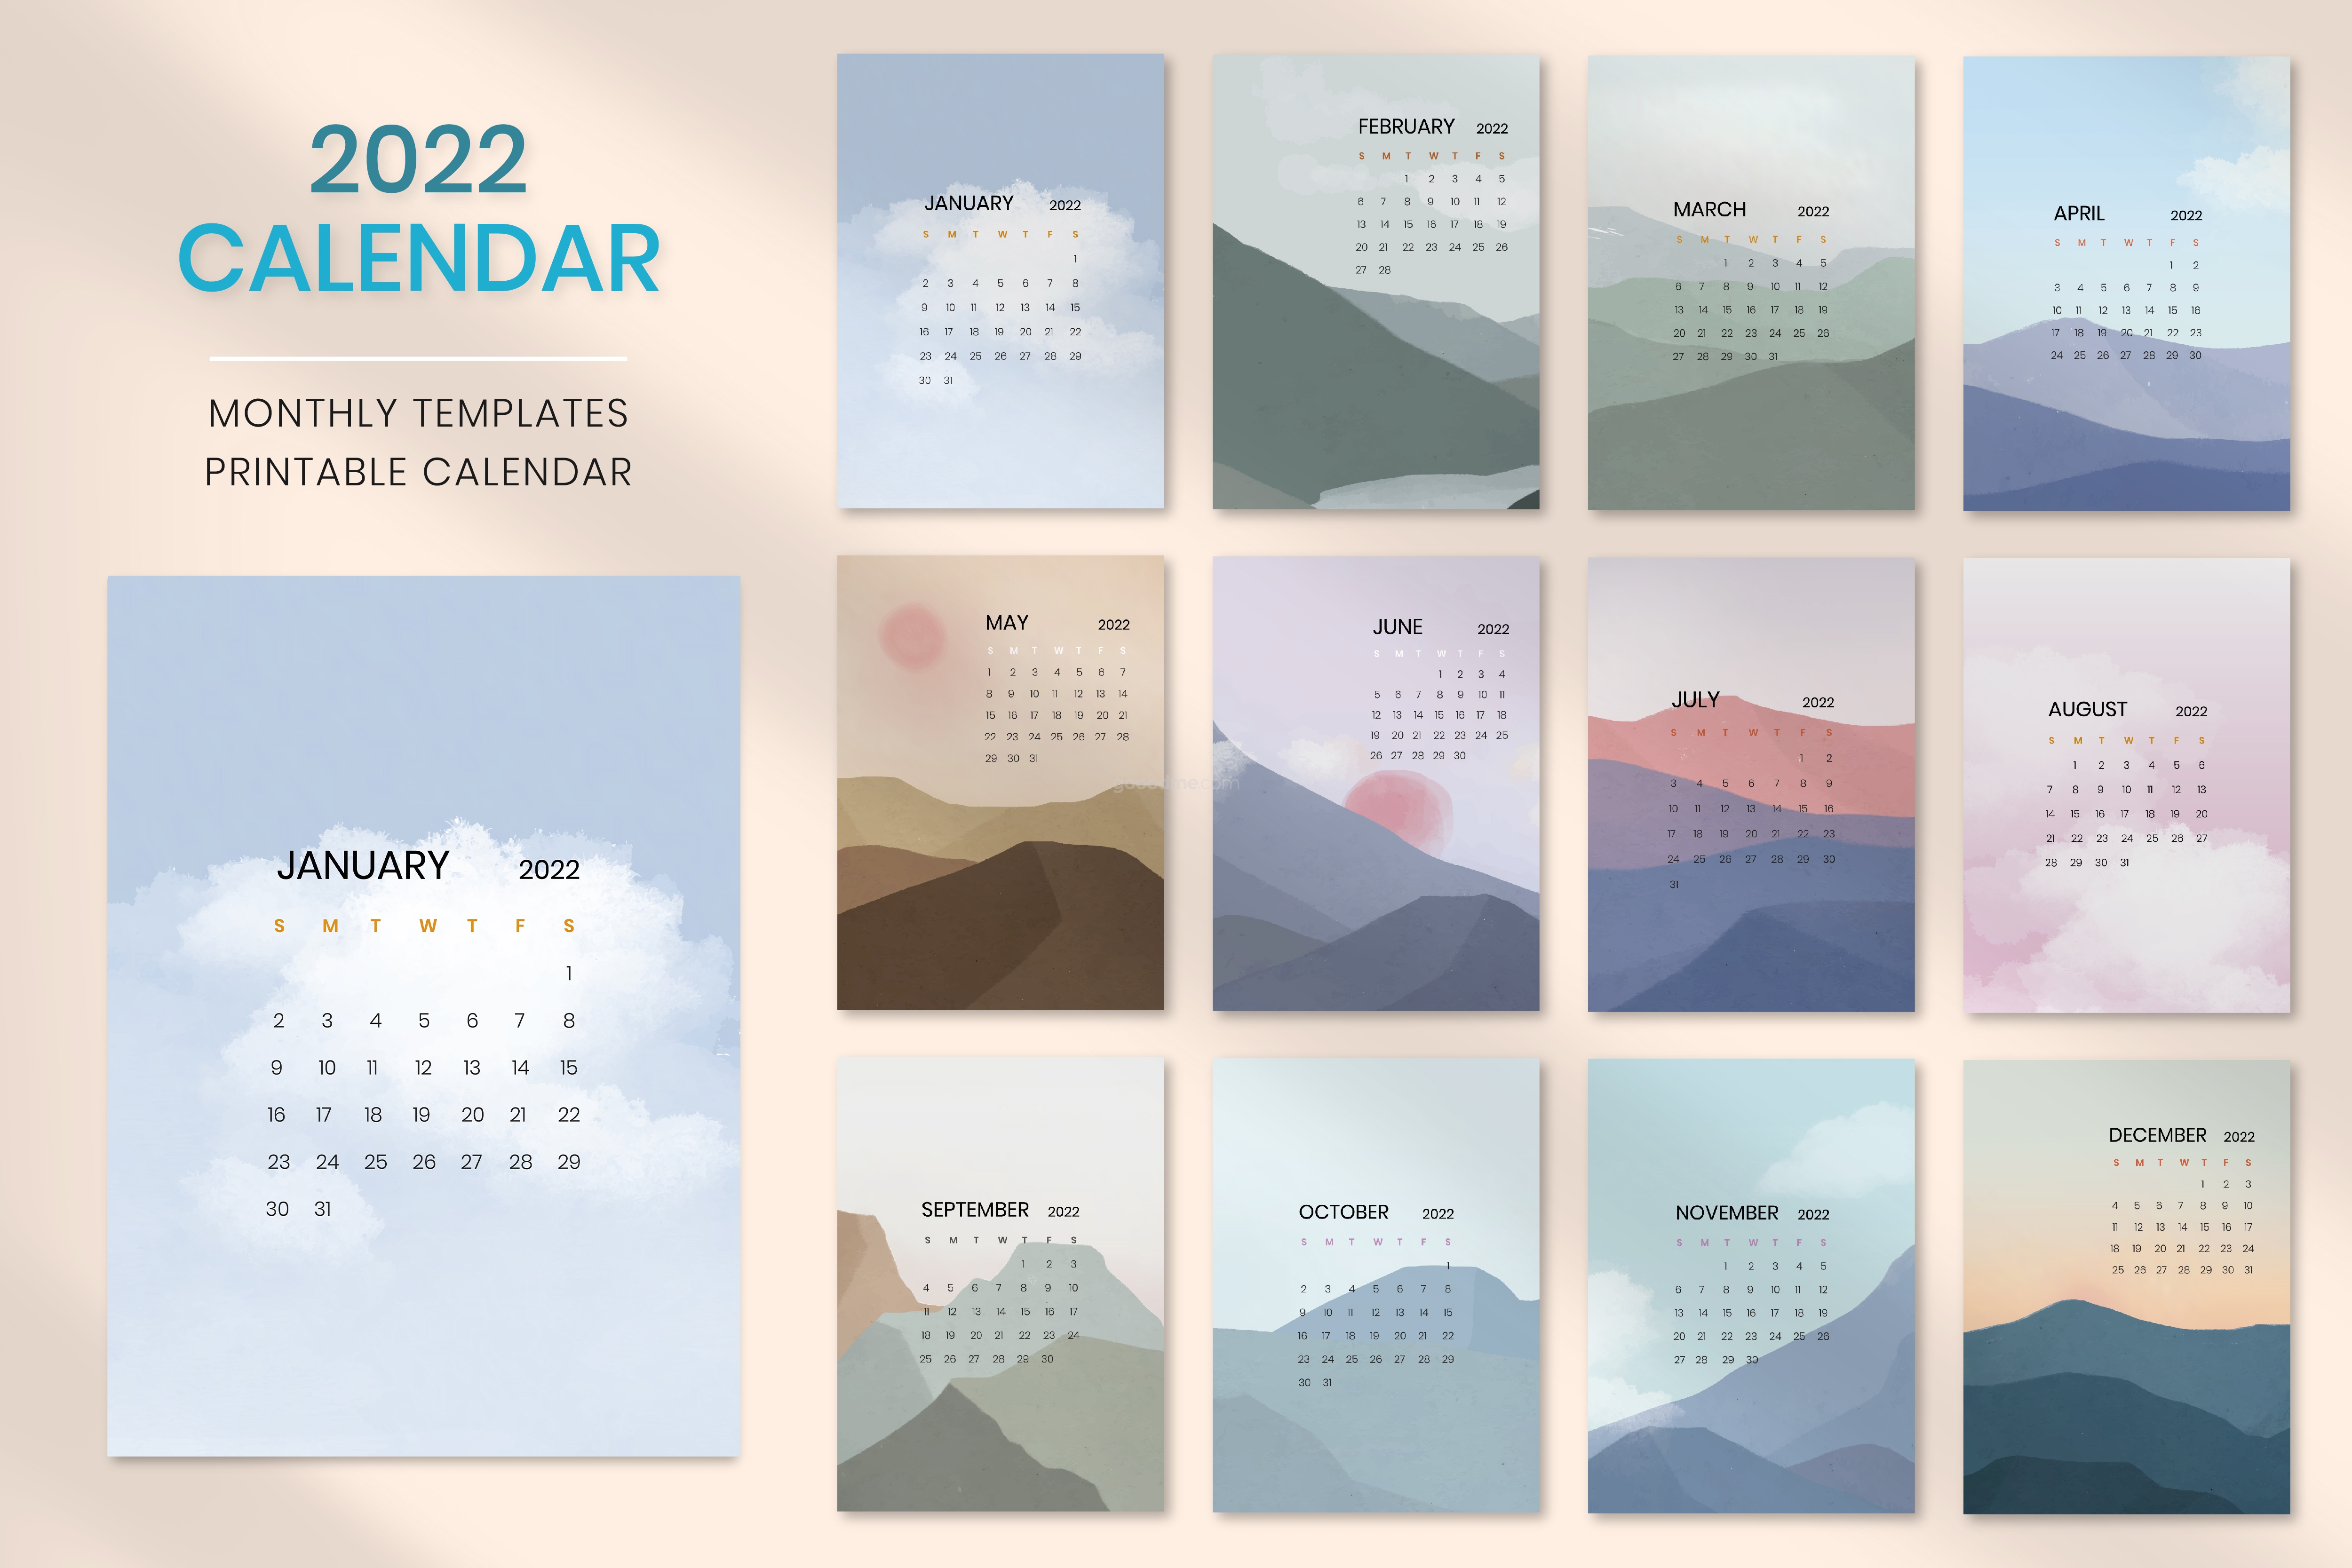 791 写意山水日出新年挂历2022日历矢量可商用设计模板sky mountain yearly calendar vector minimal scandinavian aesthetics printable vector template set